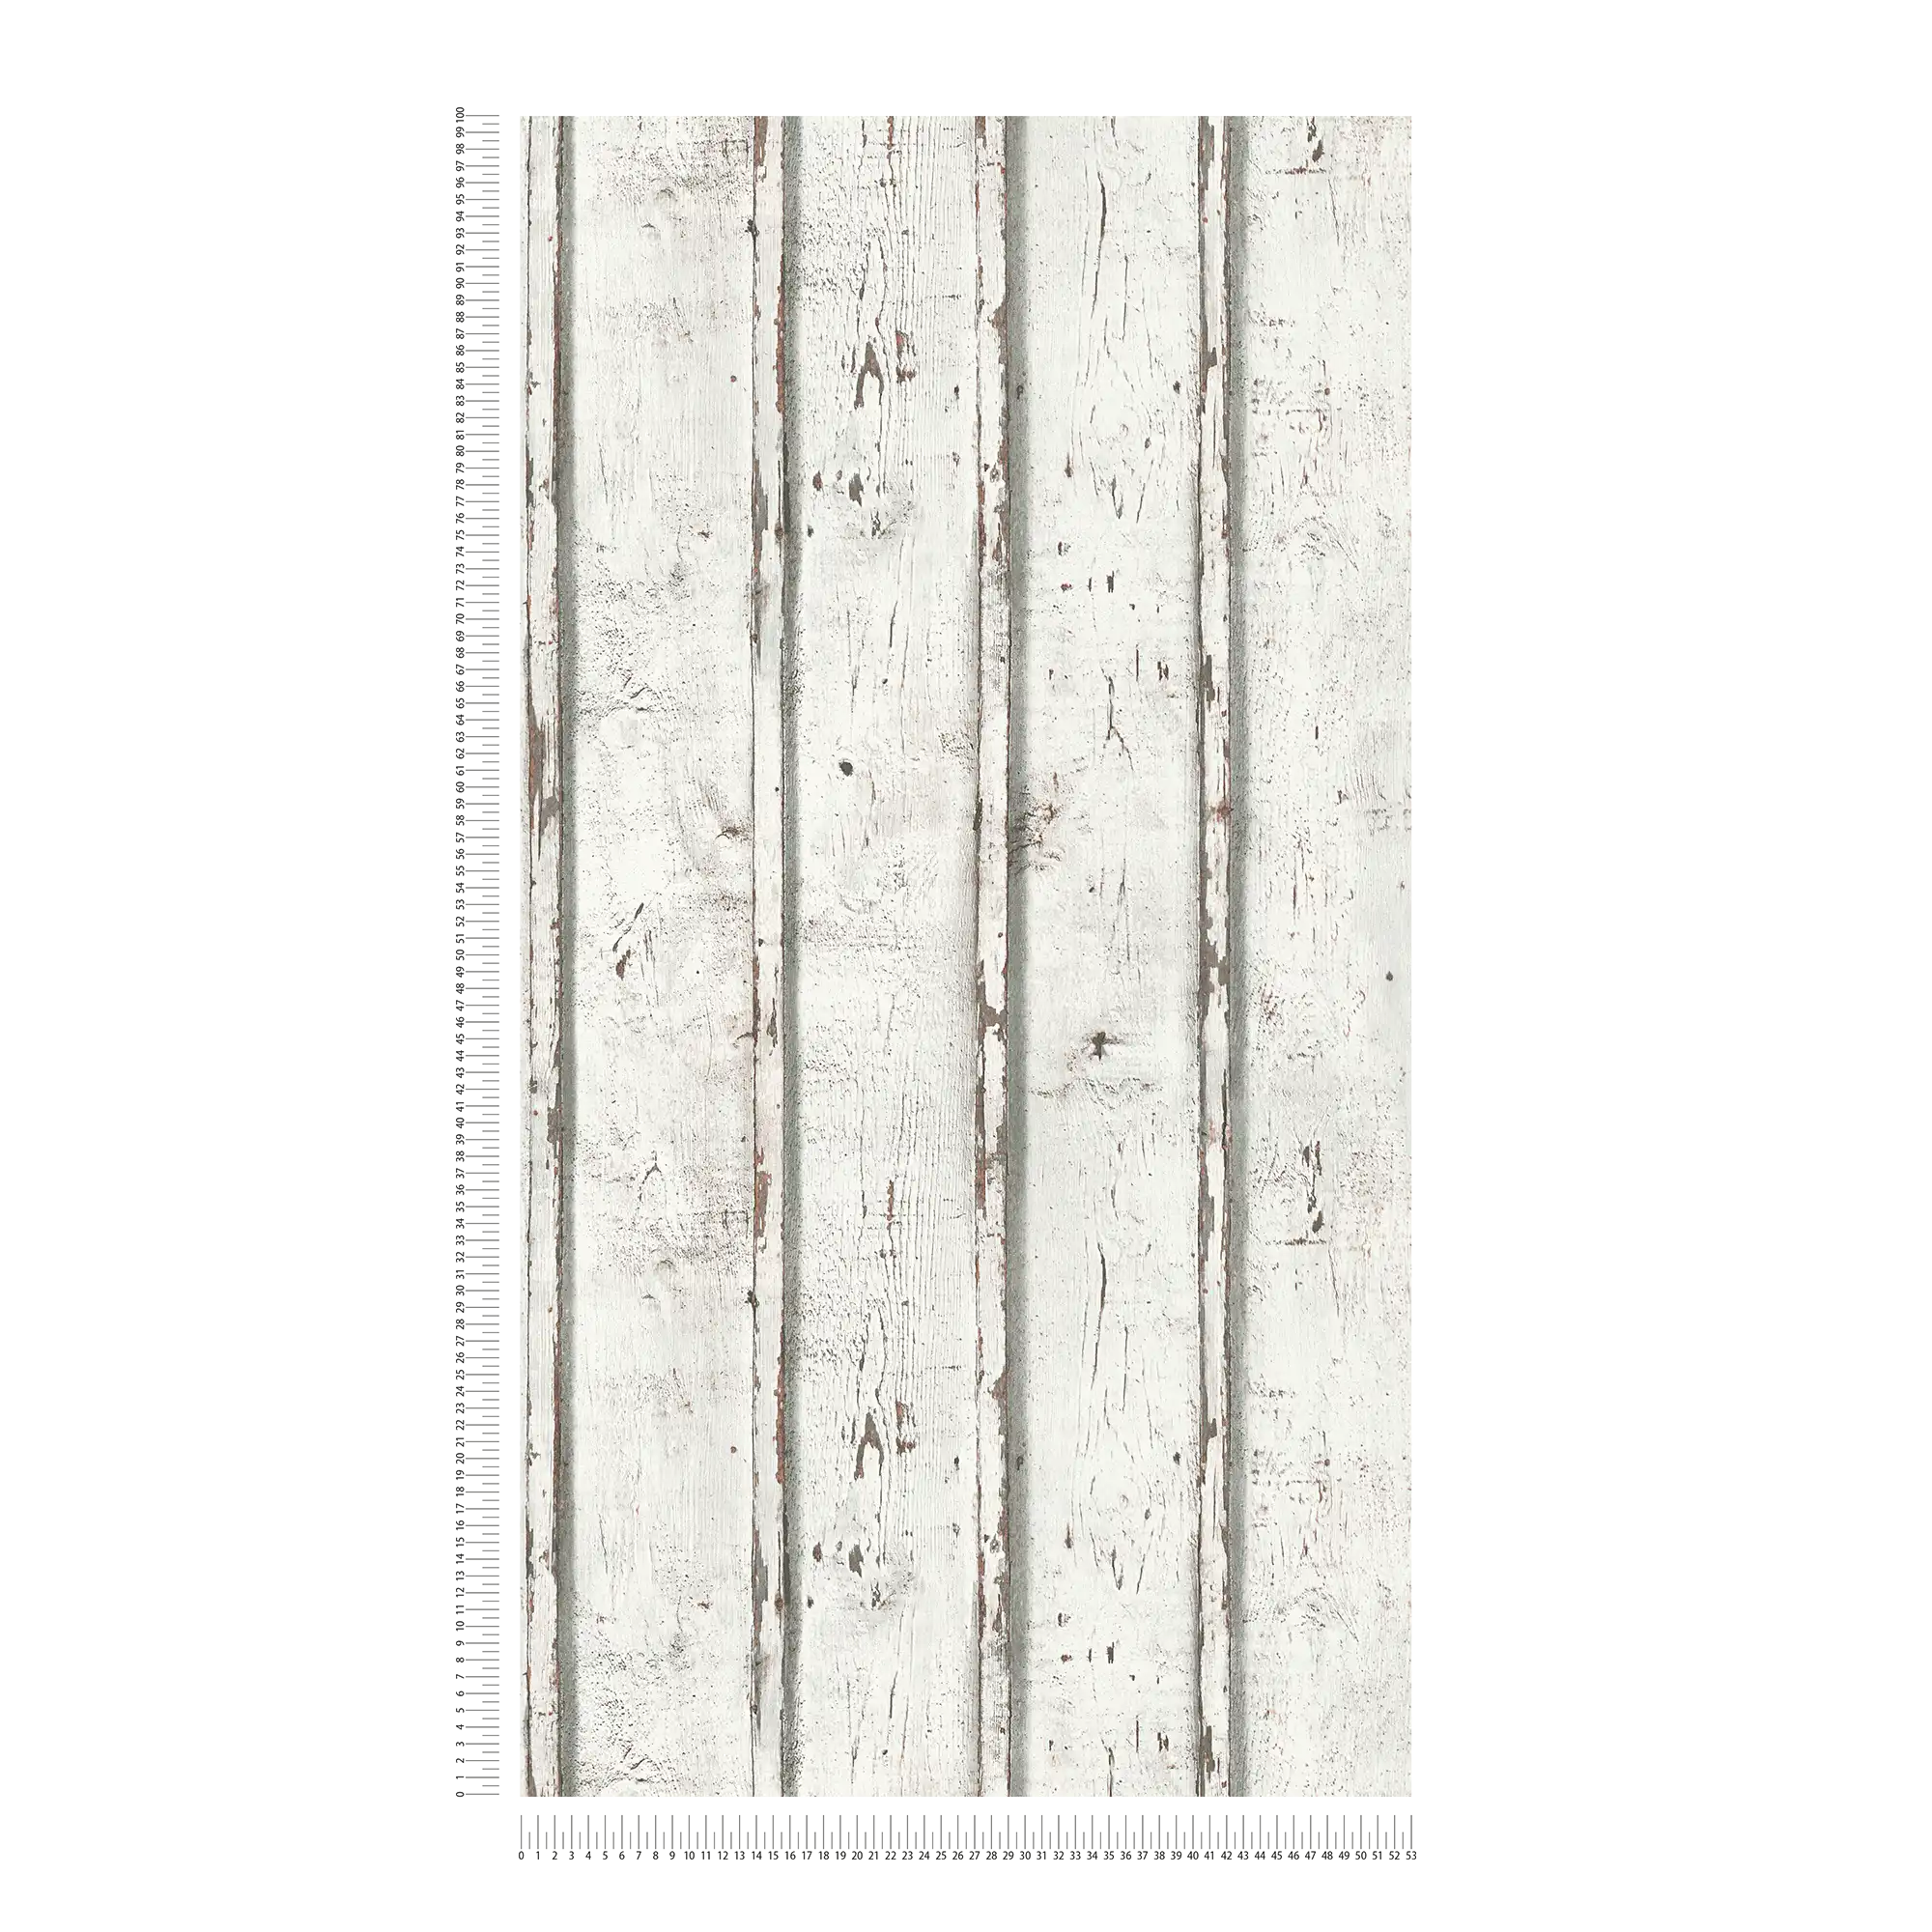             Papel pintado de madera en aspecto usado con tablas de madera desgastadas - blanco, crema, gris
        